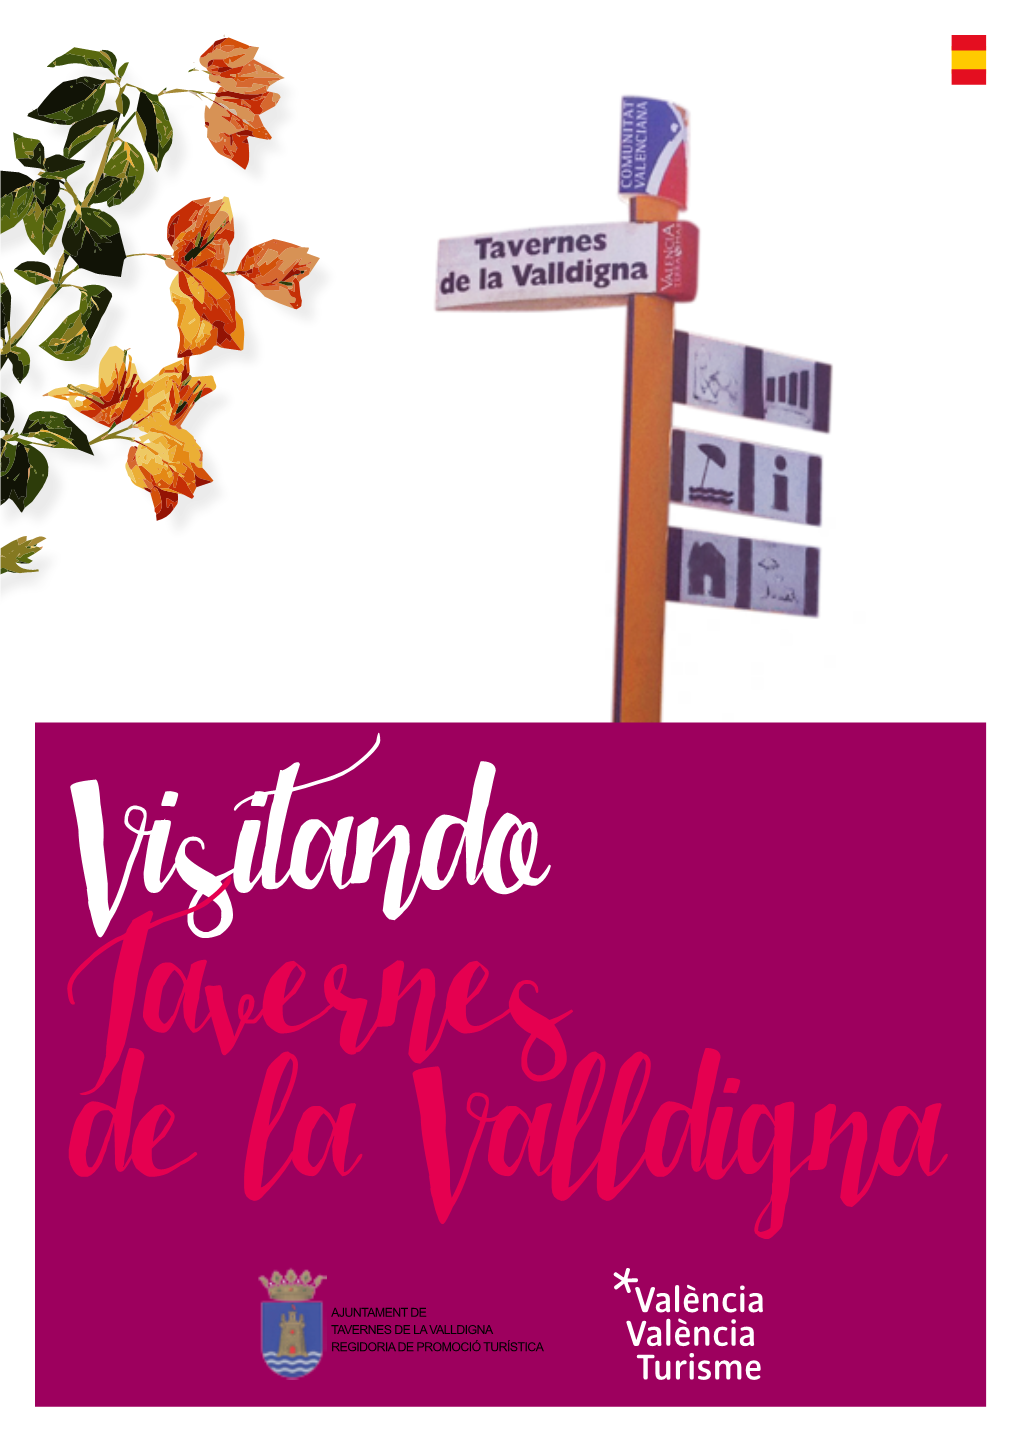 Ajuntament De Tavernes De La Valldigna Regidoria De